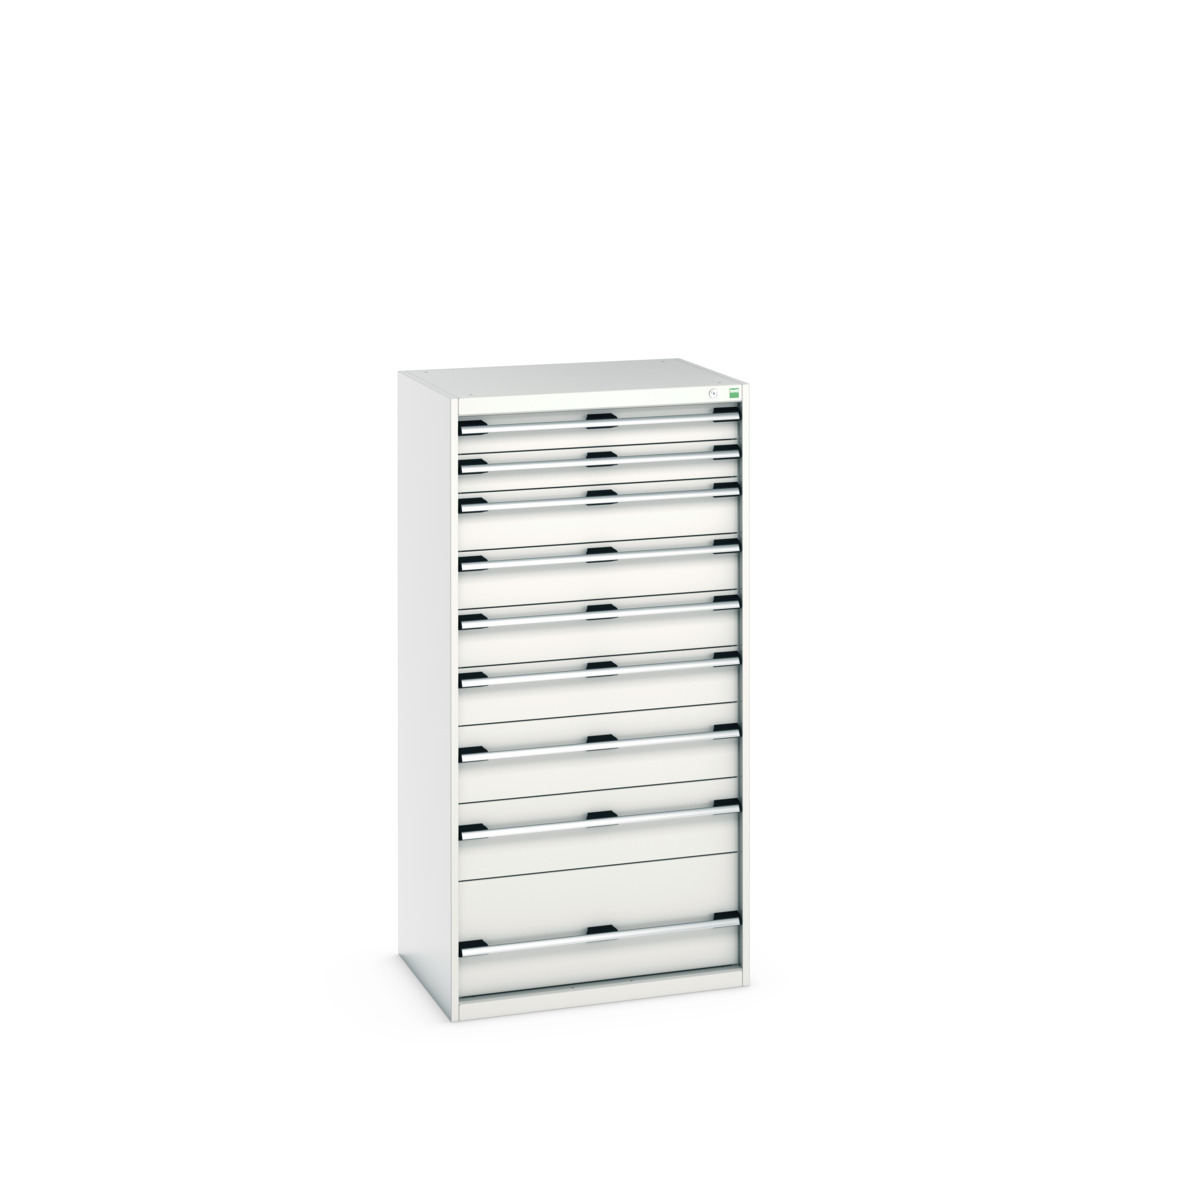 40020068.16V - cubio drawer cabinet